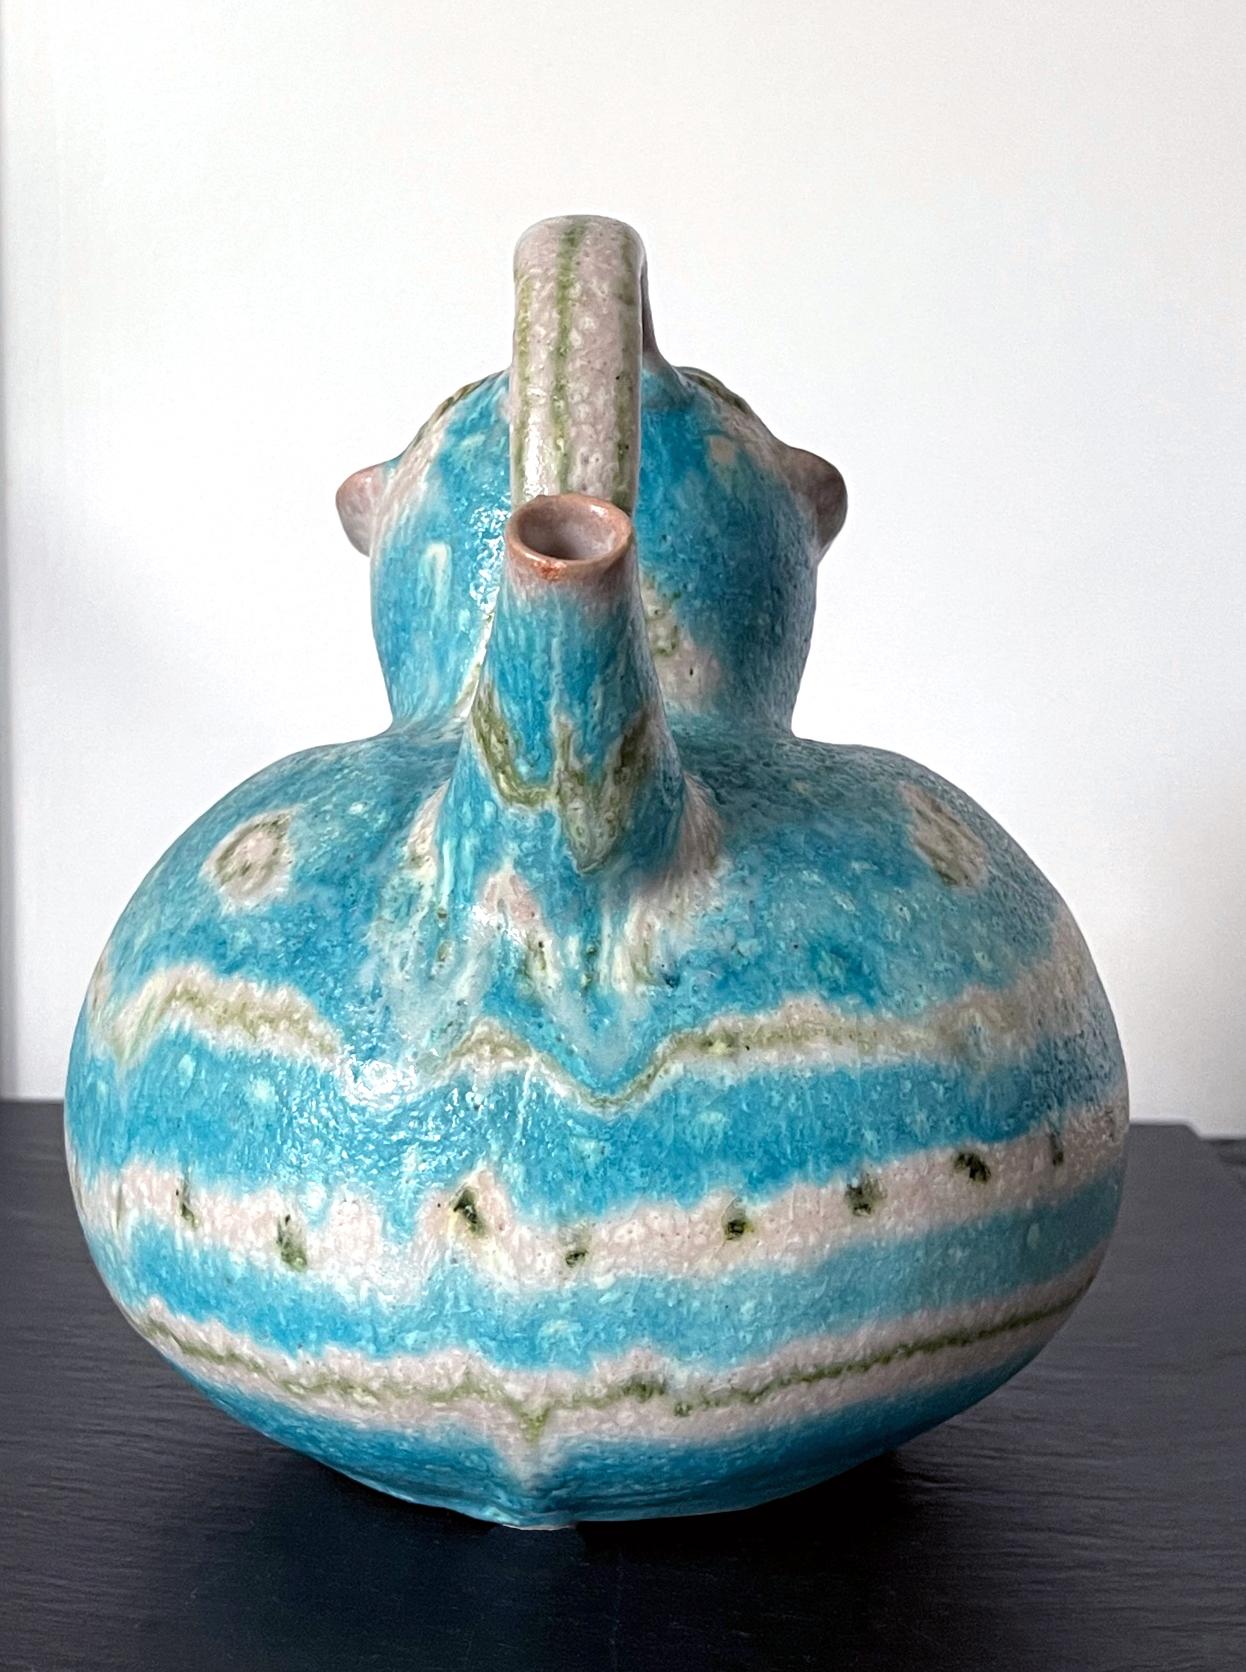 Italian Glazed Stoneware Anthropomorphic Pitcher by Guido Gambone 1